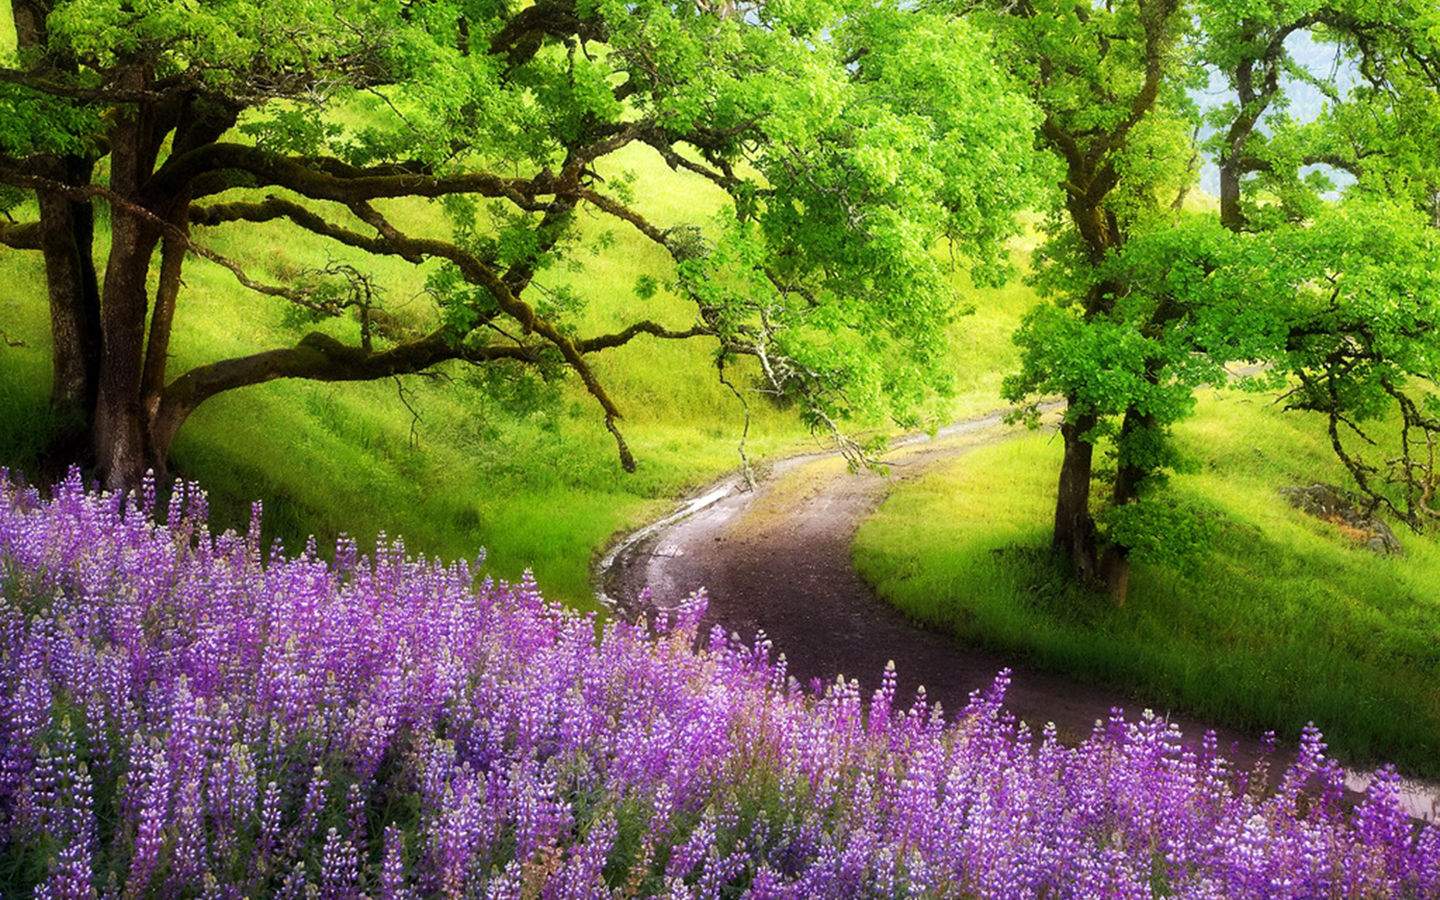 http://2.bp.blogspot.com/-YZnliLCmSGQ/UGS_DIUFjKI/AAAAAAAAAV4/zuBrkrgFRyI/s1600/3.landscape-purple-flowers-trees-wallpaper-landscape-desktop-hd.jpg